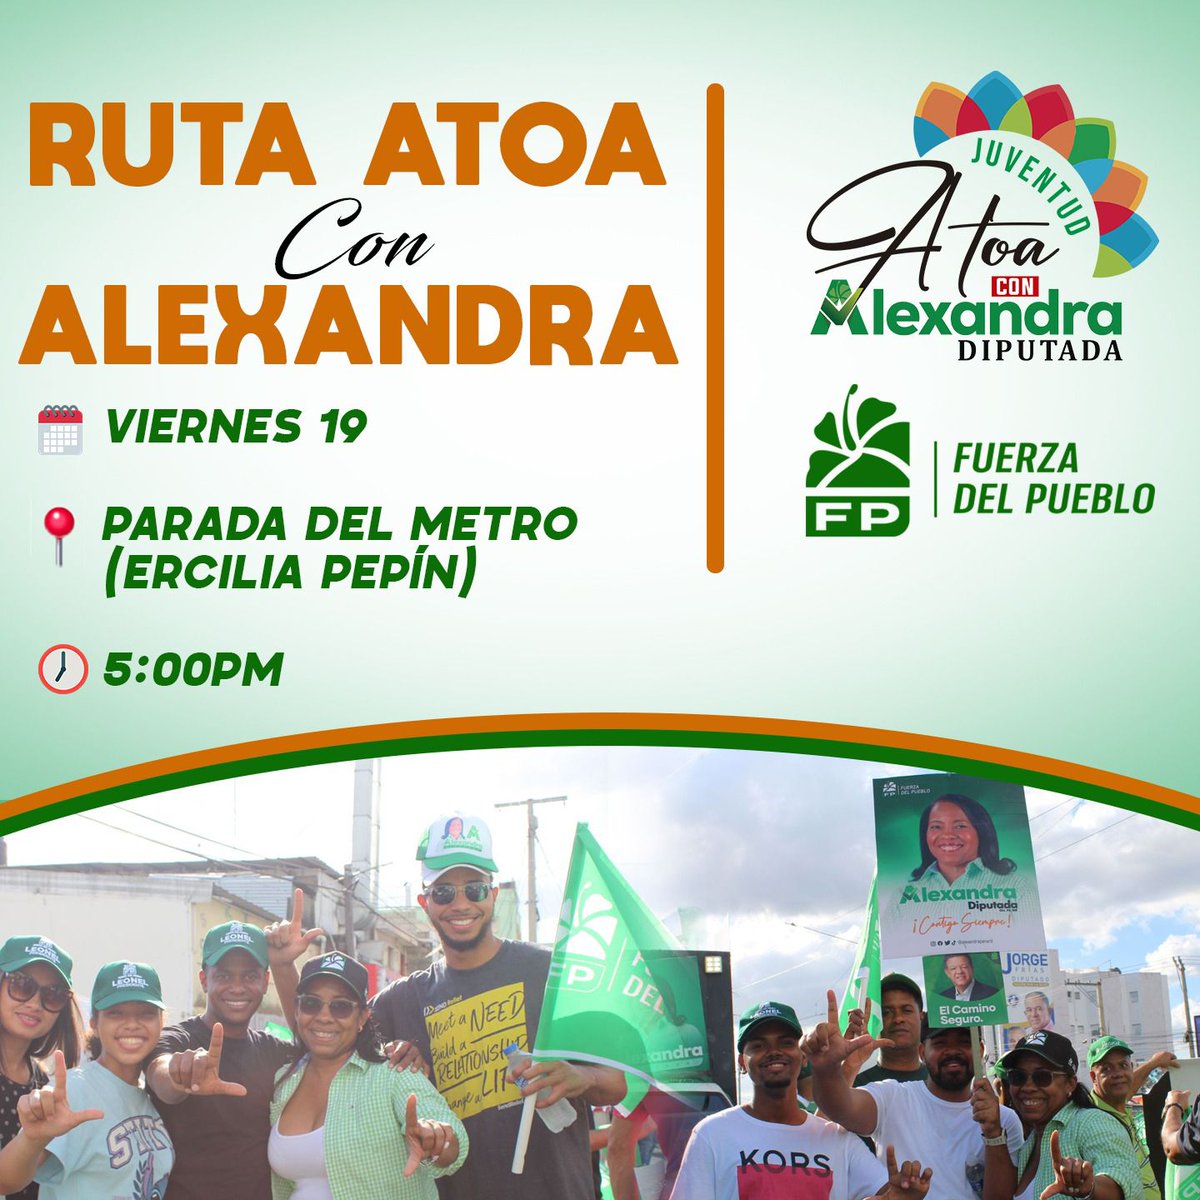 ¡Ven y acompáñanos a la 'Ruta Atoa con Alexandra'! 🗓️ Viernes 19 📍 Parada del metro: Ercilia Pepín 🕒 5:00PM ¡No te lo pierdas!